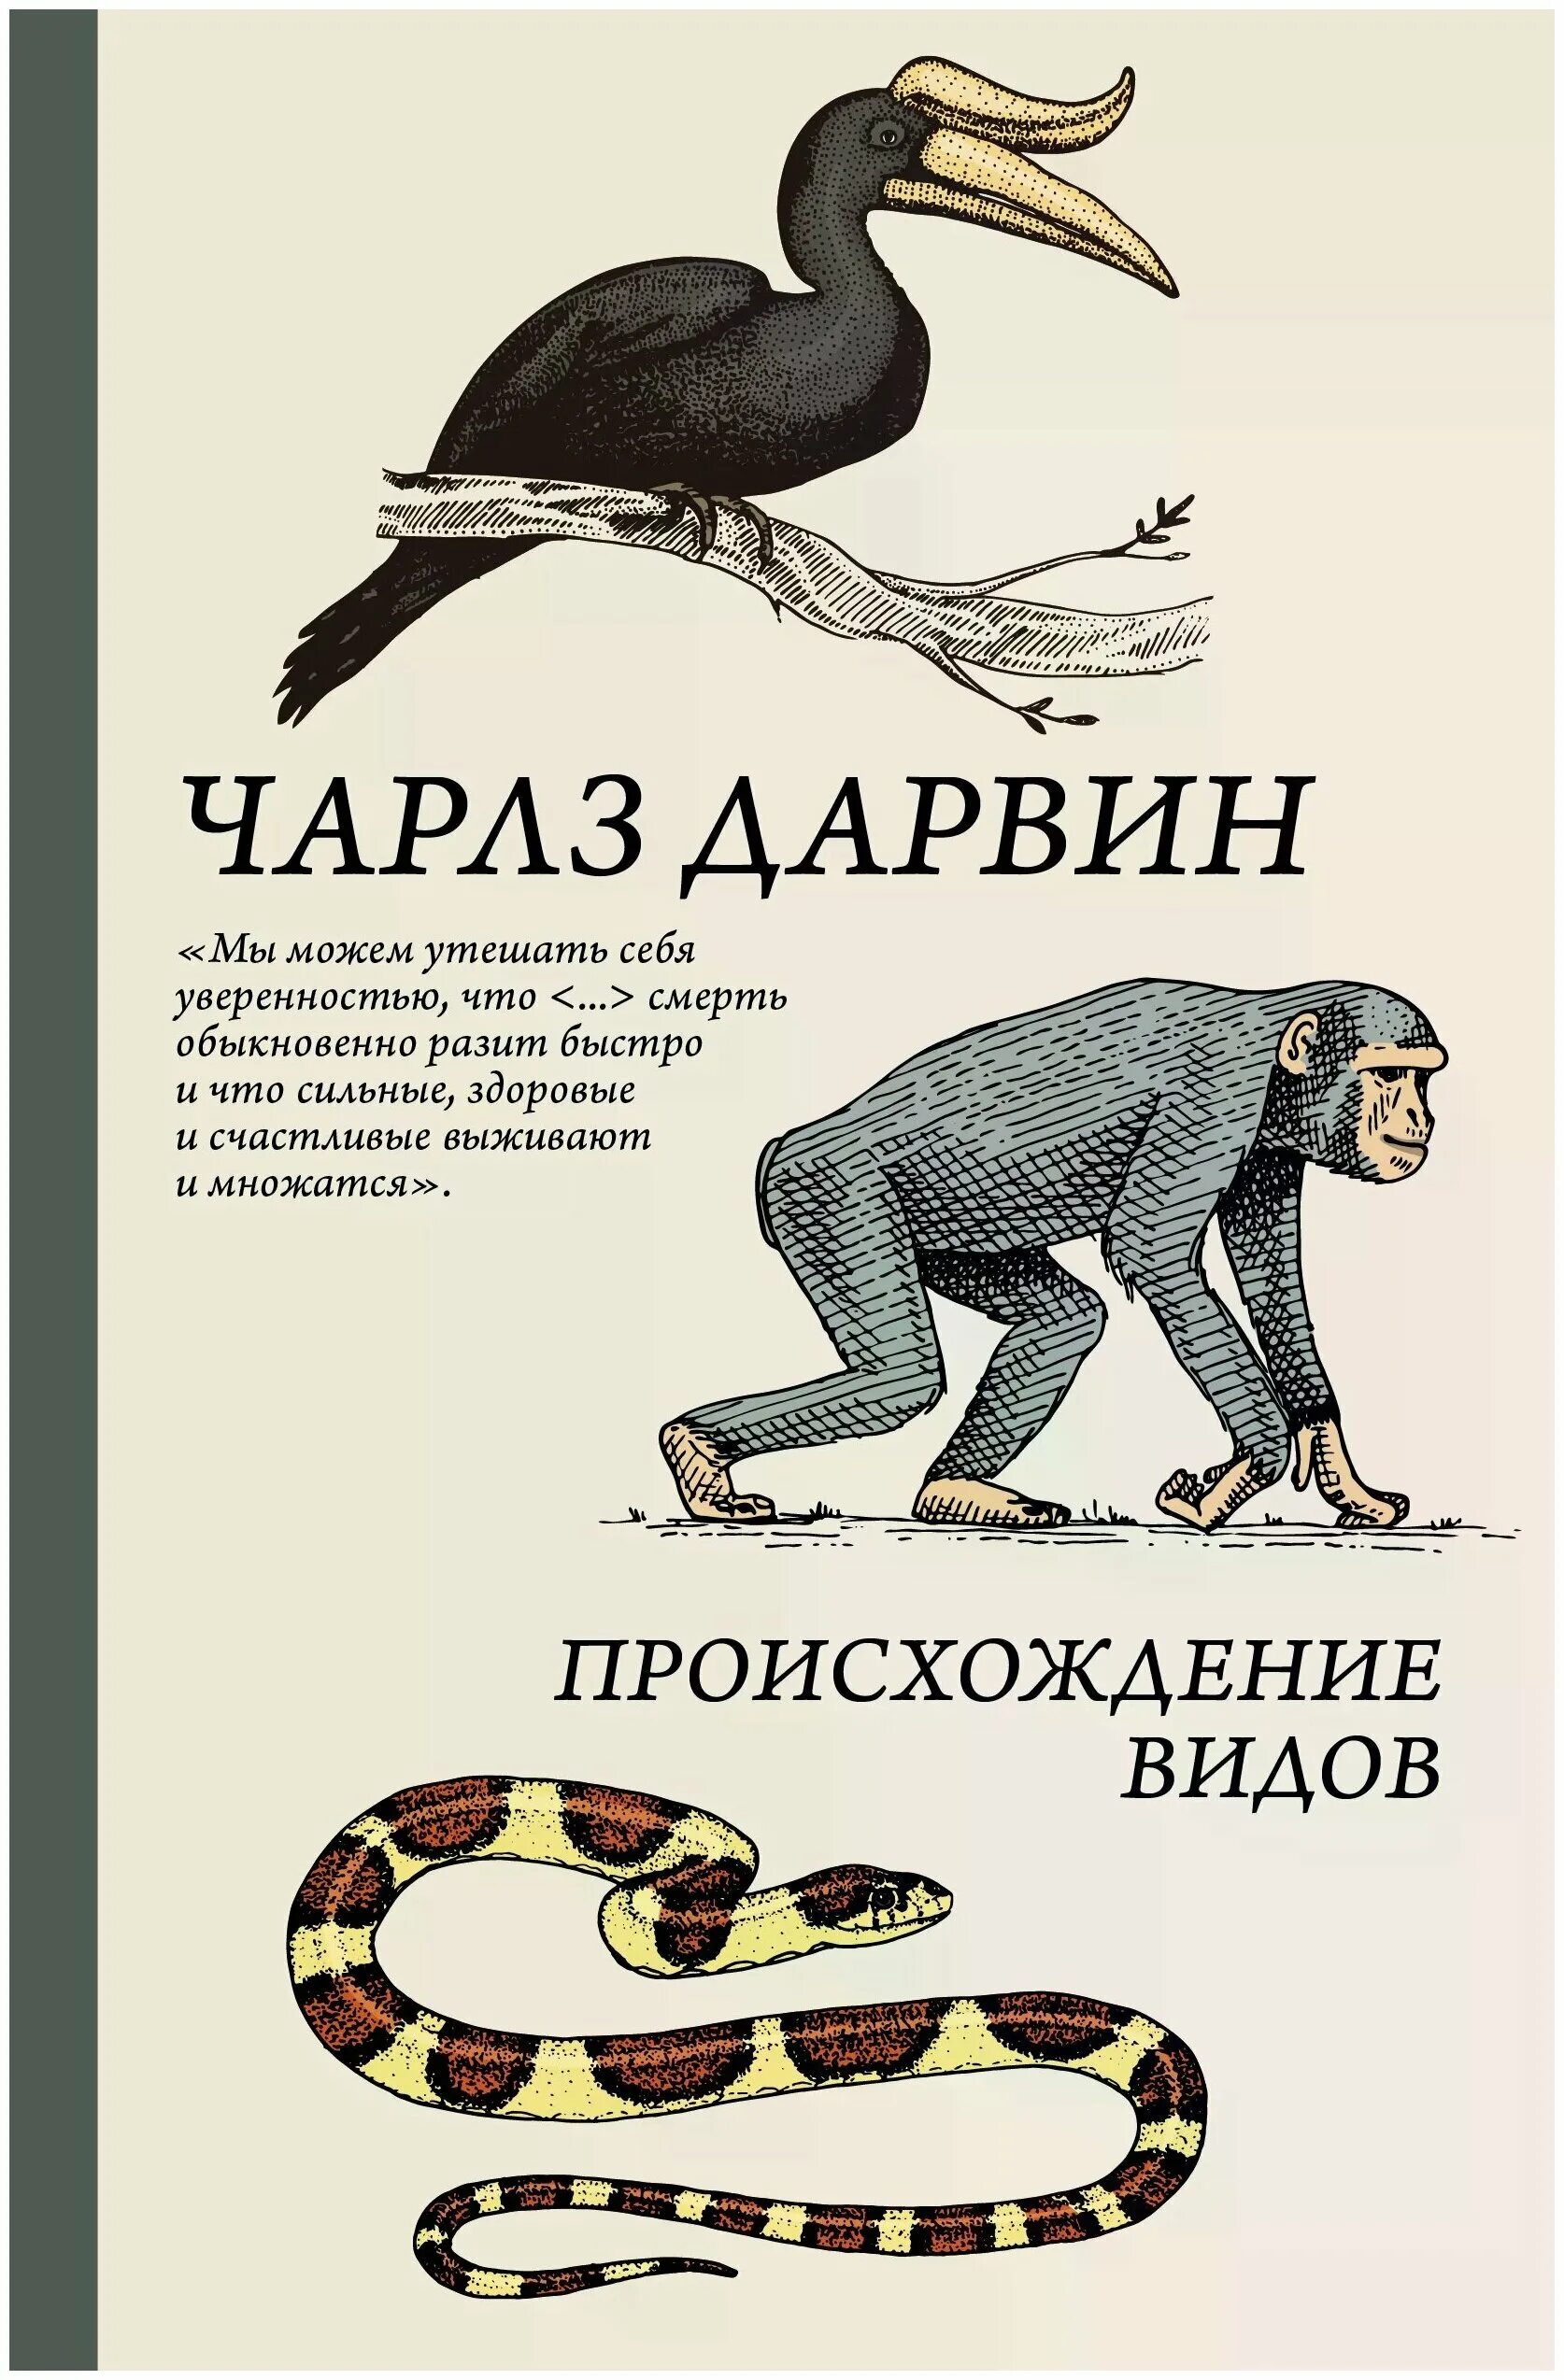 Дарвин происхождение видов путем естественного отбора. Книга Дарвина «происхождение видов путем естественного отбора» (1859).